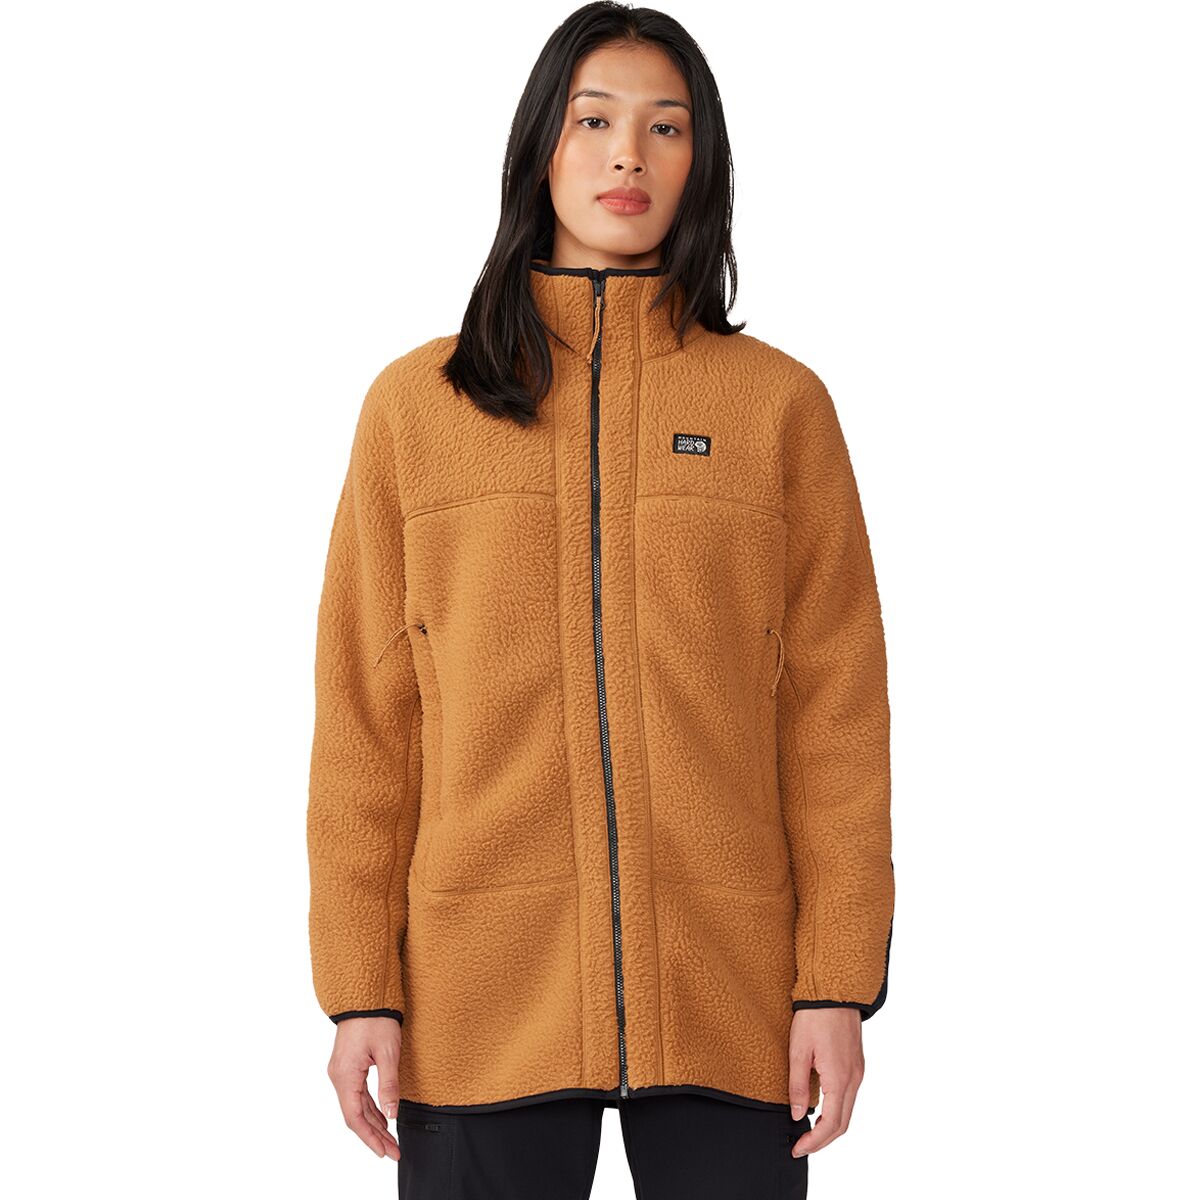 Длинная флисовая куртка hicamp на молнии во всю длину Mountain Hardwear, цвет copper clay